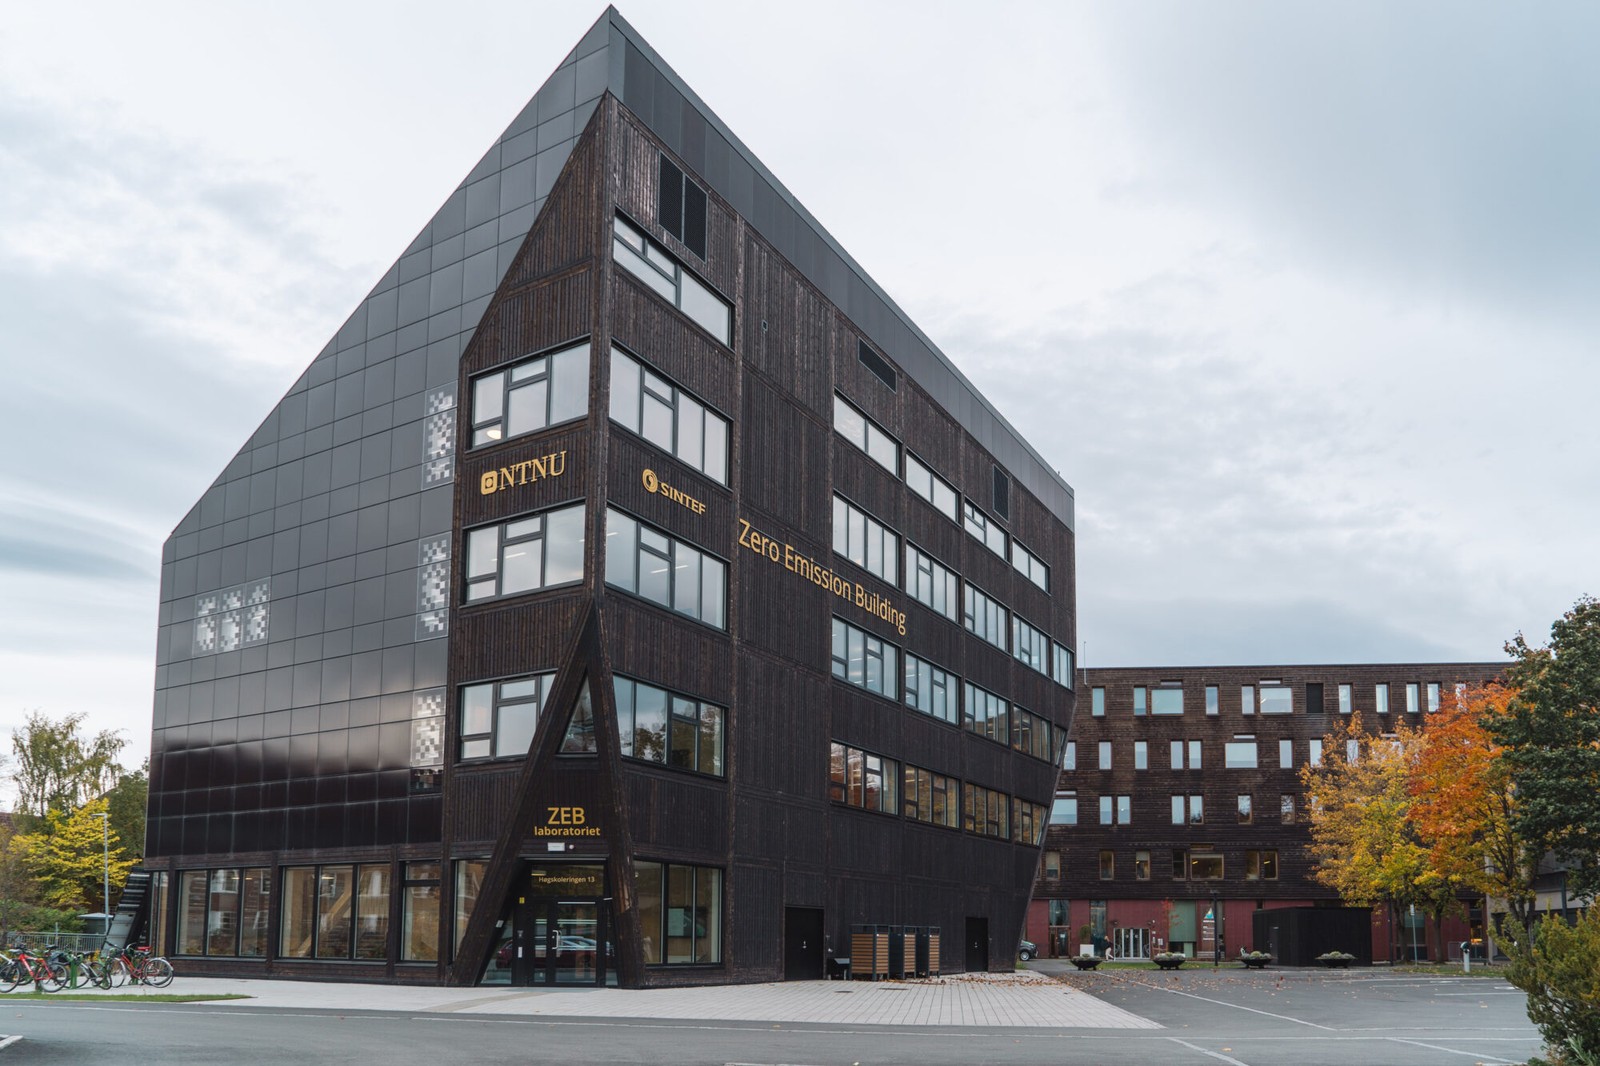 Budynek laboratorium w Trondheim / źródło: materiały prasowe, SINTEF, www.sintef.no/en



